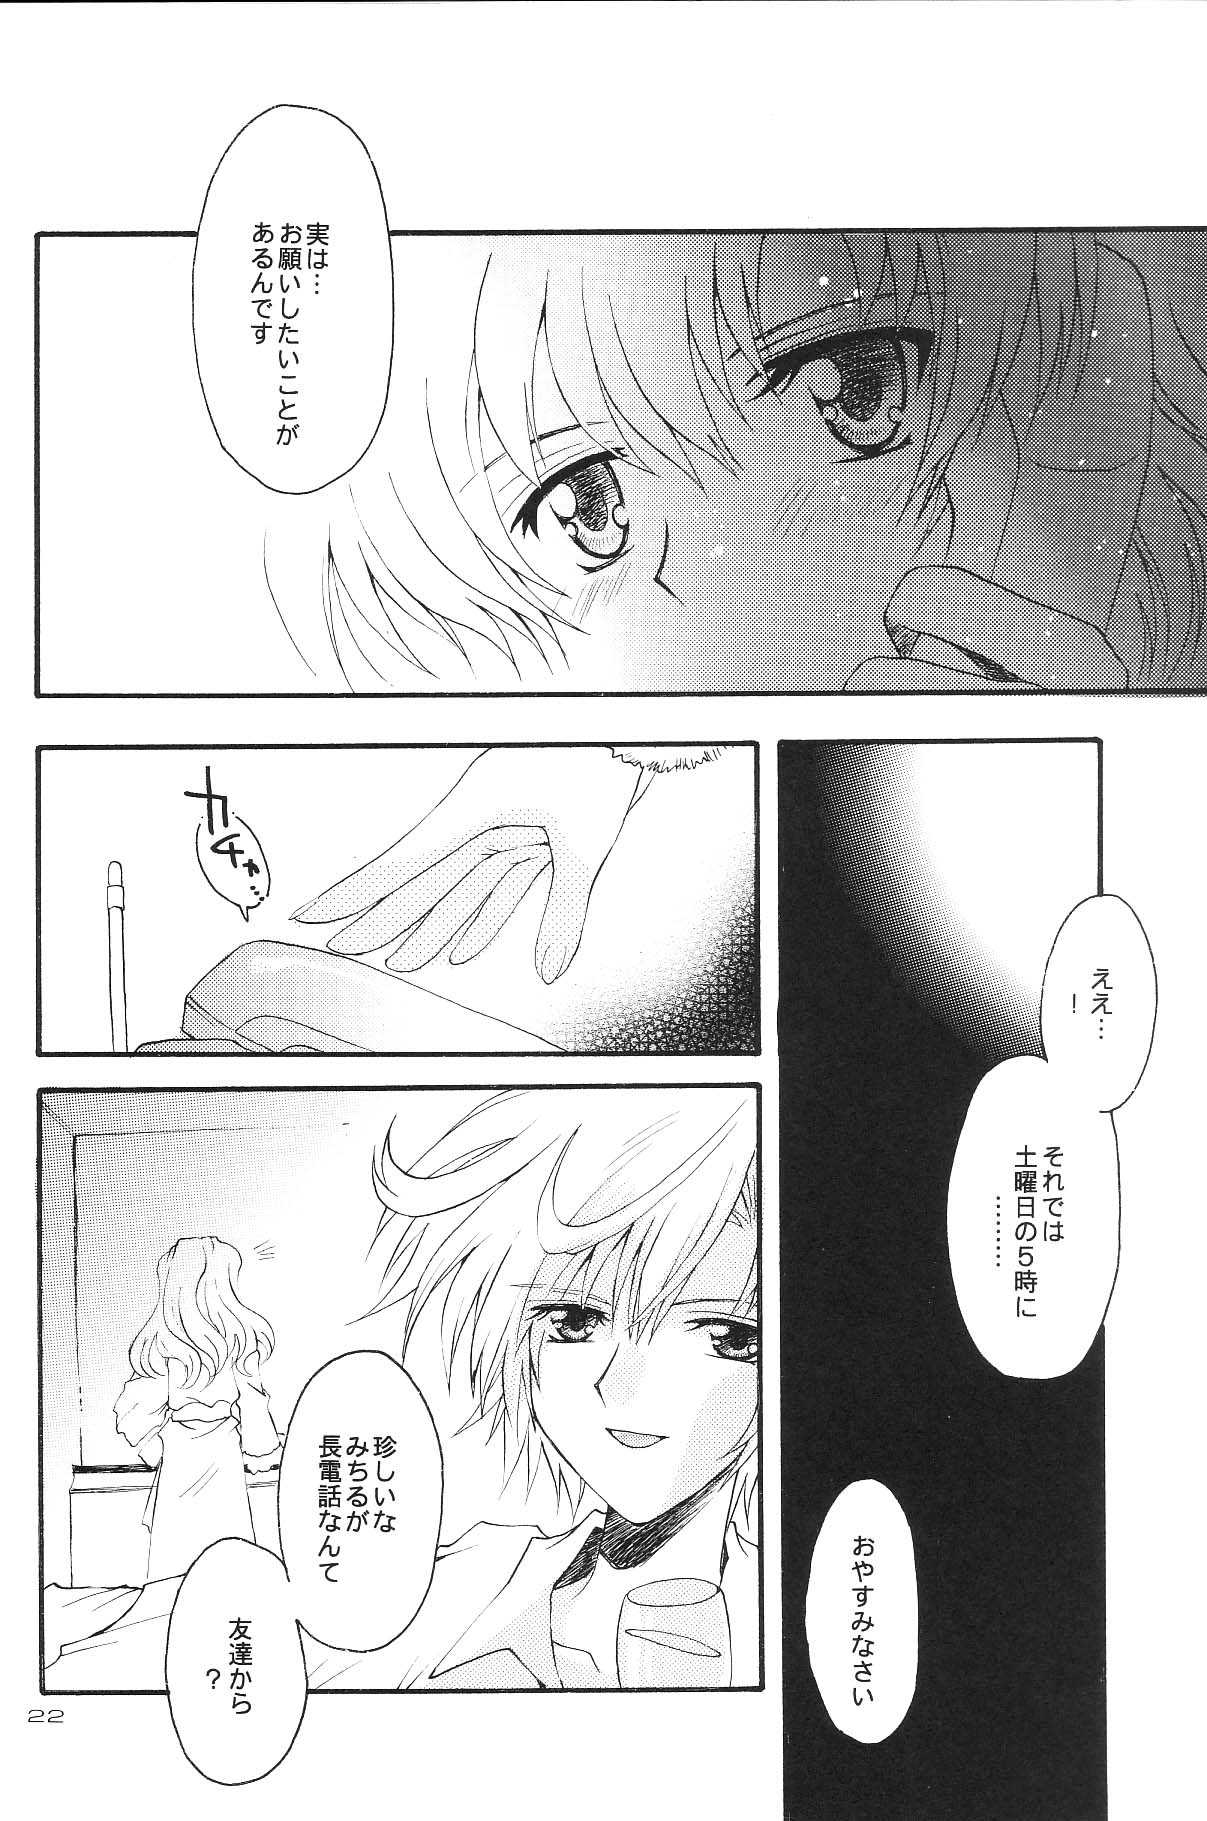 [Kotori Jimusho] Ave Maris Stella 3 (Sailor Moon) 